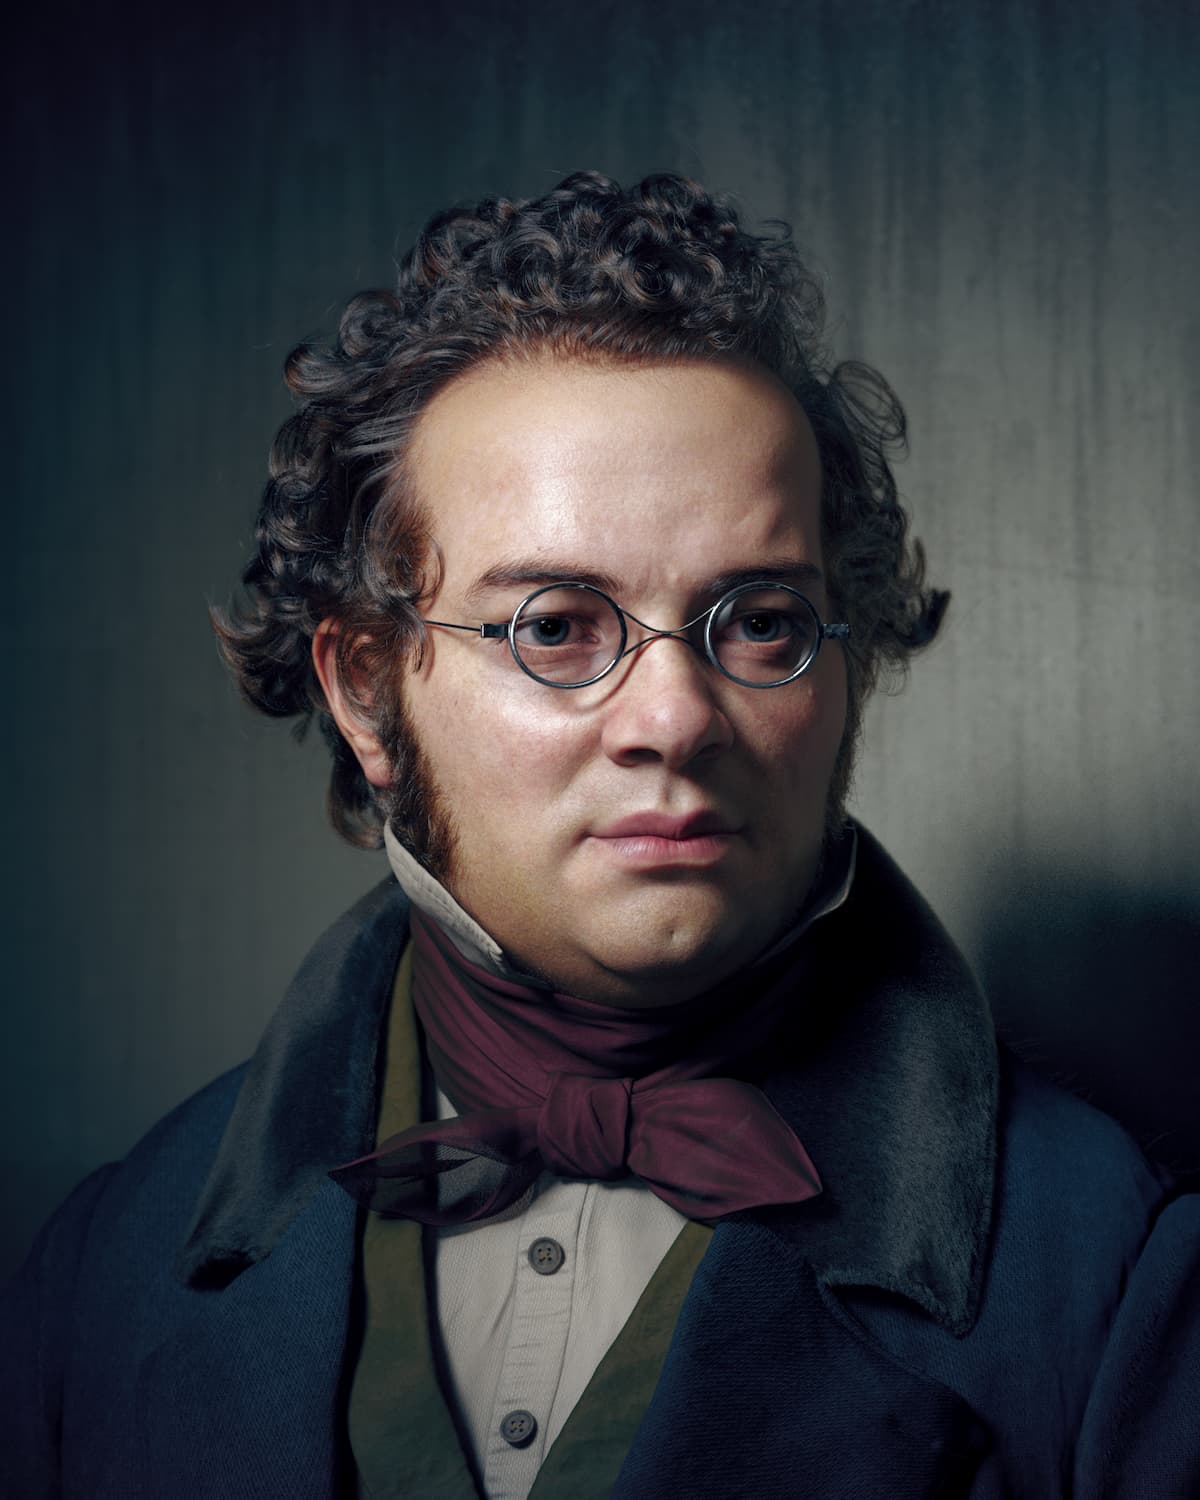 3D portrait of composer Franz Schubert